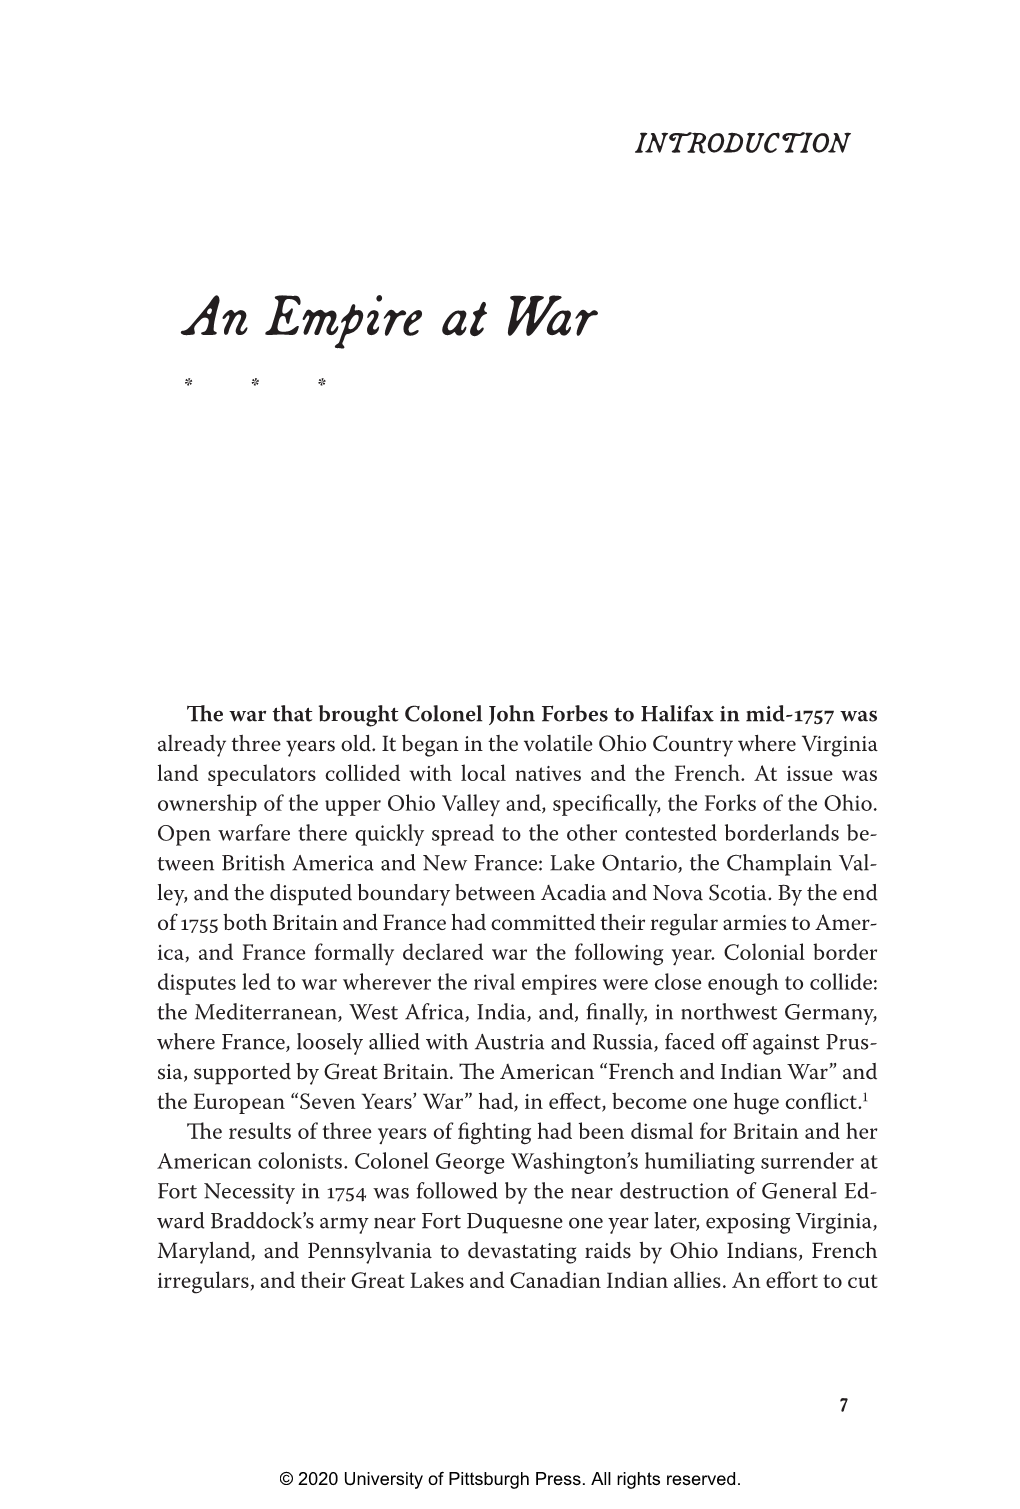 An Empire at War